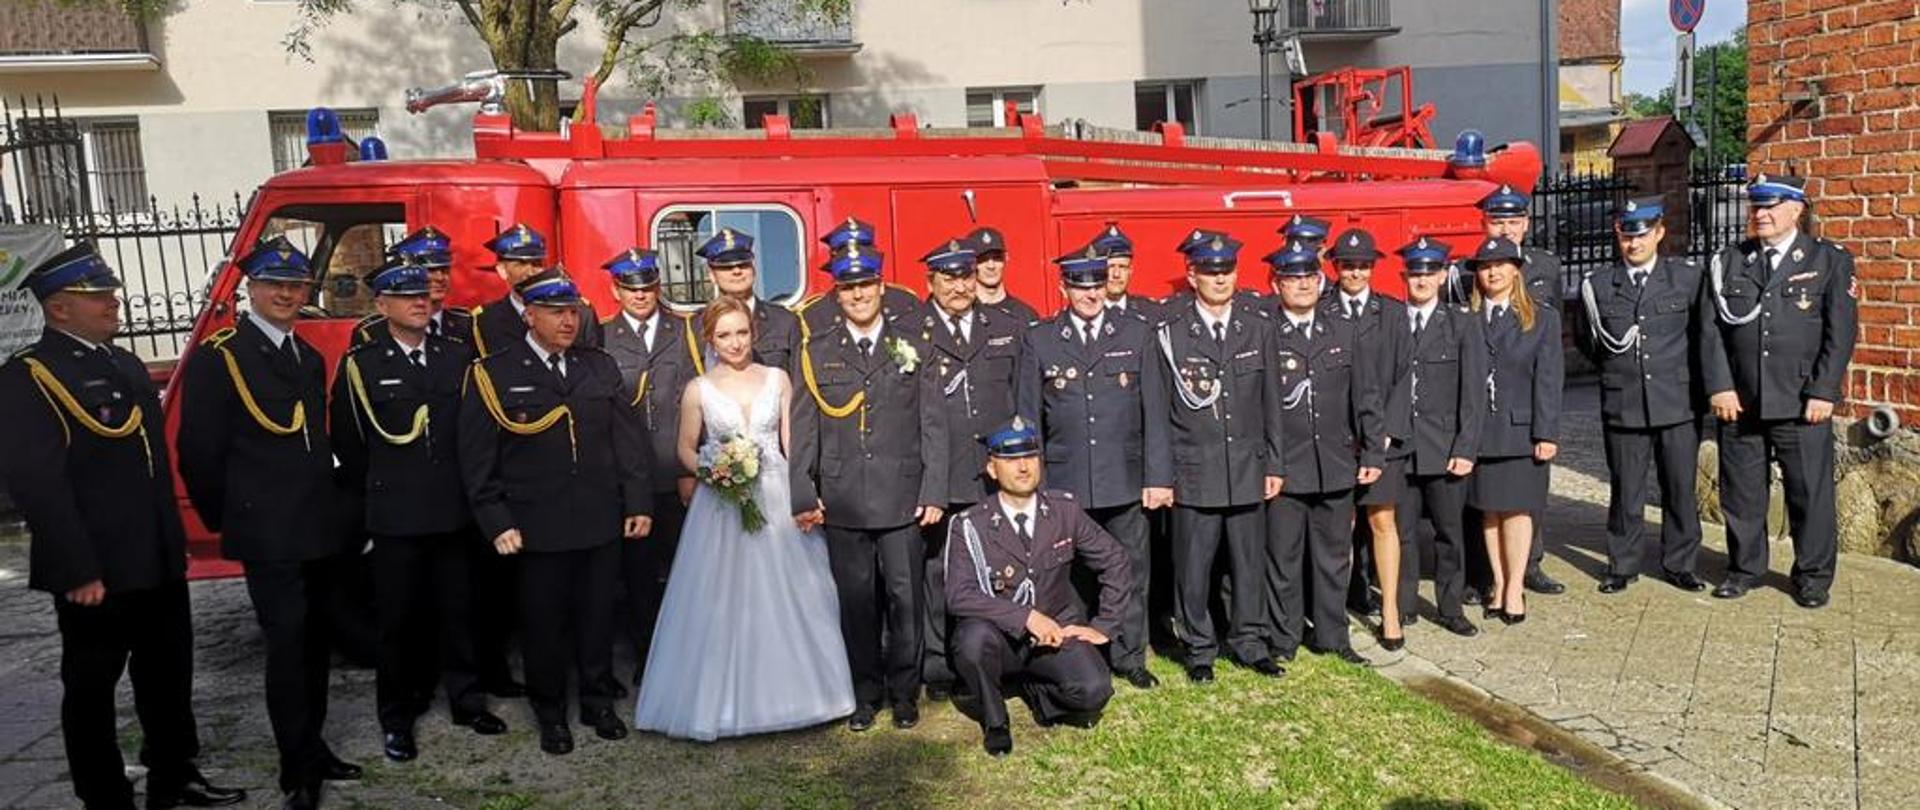 Strażacy w mundurach galowych z para młodą na tle zabytkowego samochodu strażackiego.